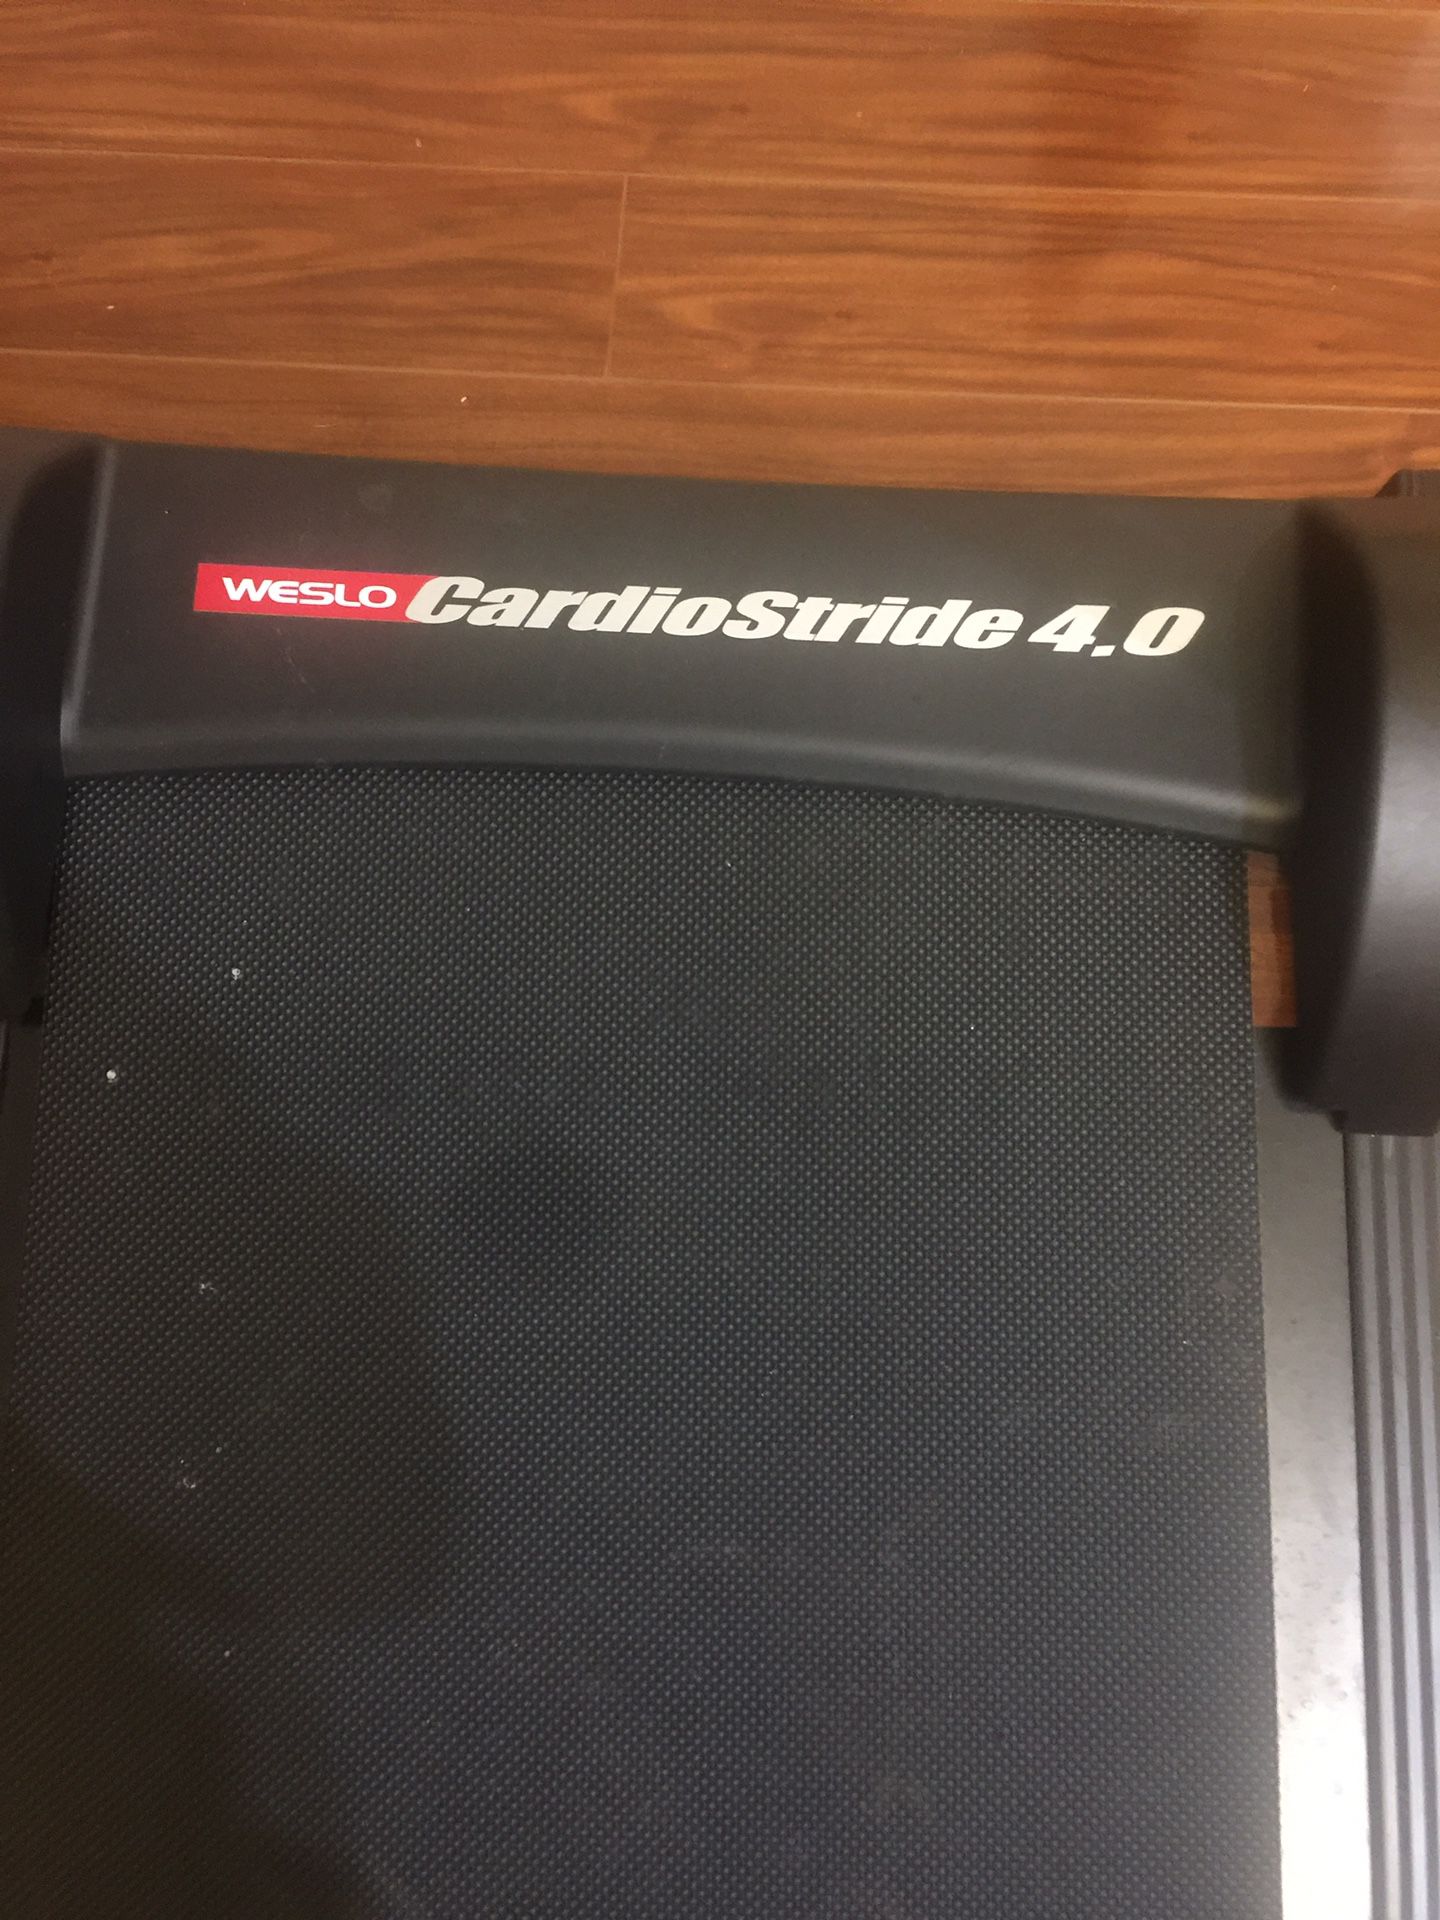 Weslo Cardio Stride 4.0 Manual Treadmill